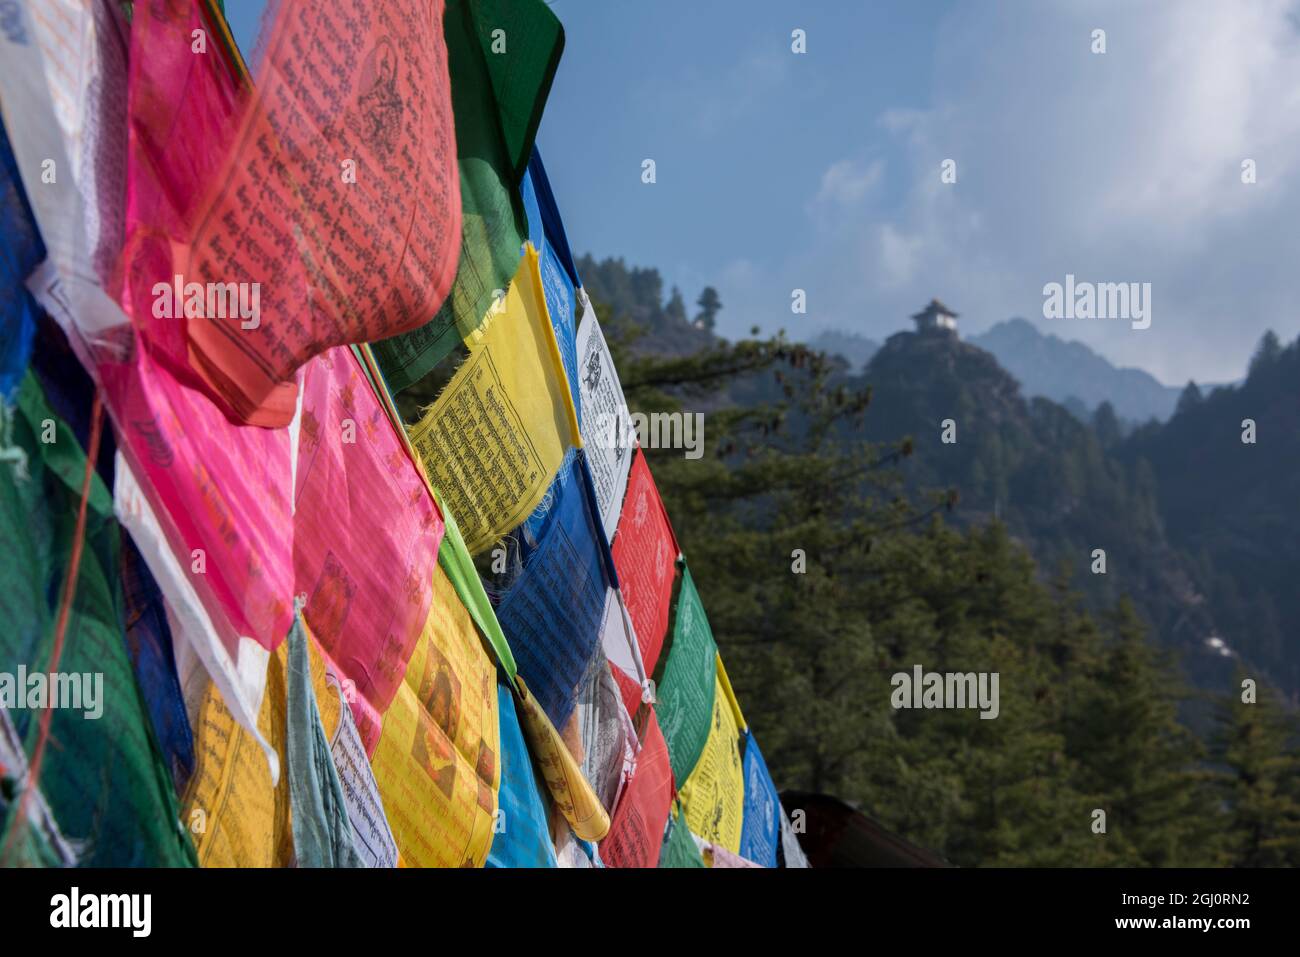 Il Bhutan, Paro. Preghiera colorate flange nella parte anteriore del piccolo annesso di Tiger's Nest, sacra buddista himalayana tempio complesso. Foto Stock